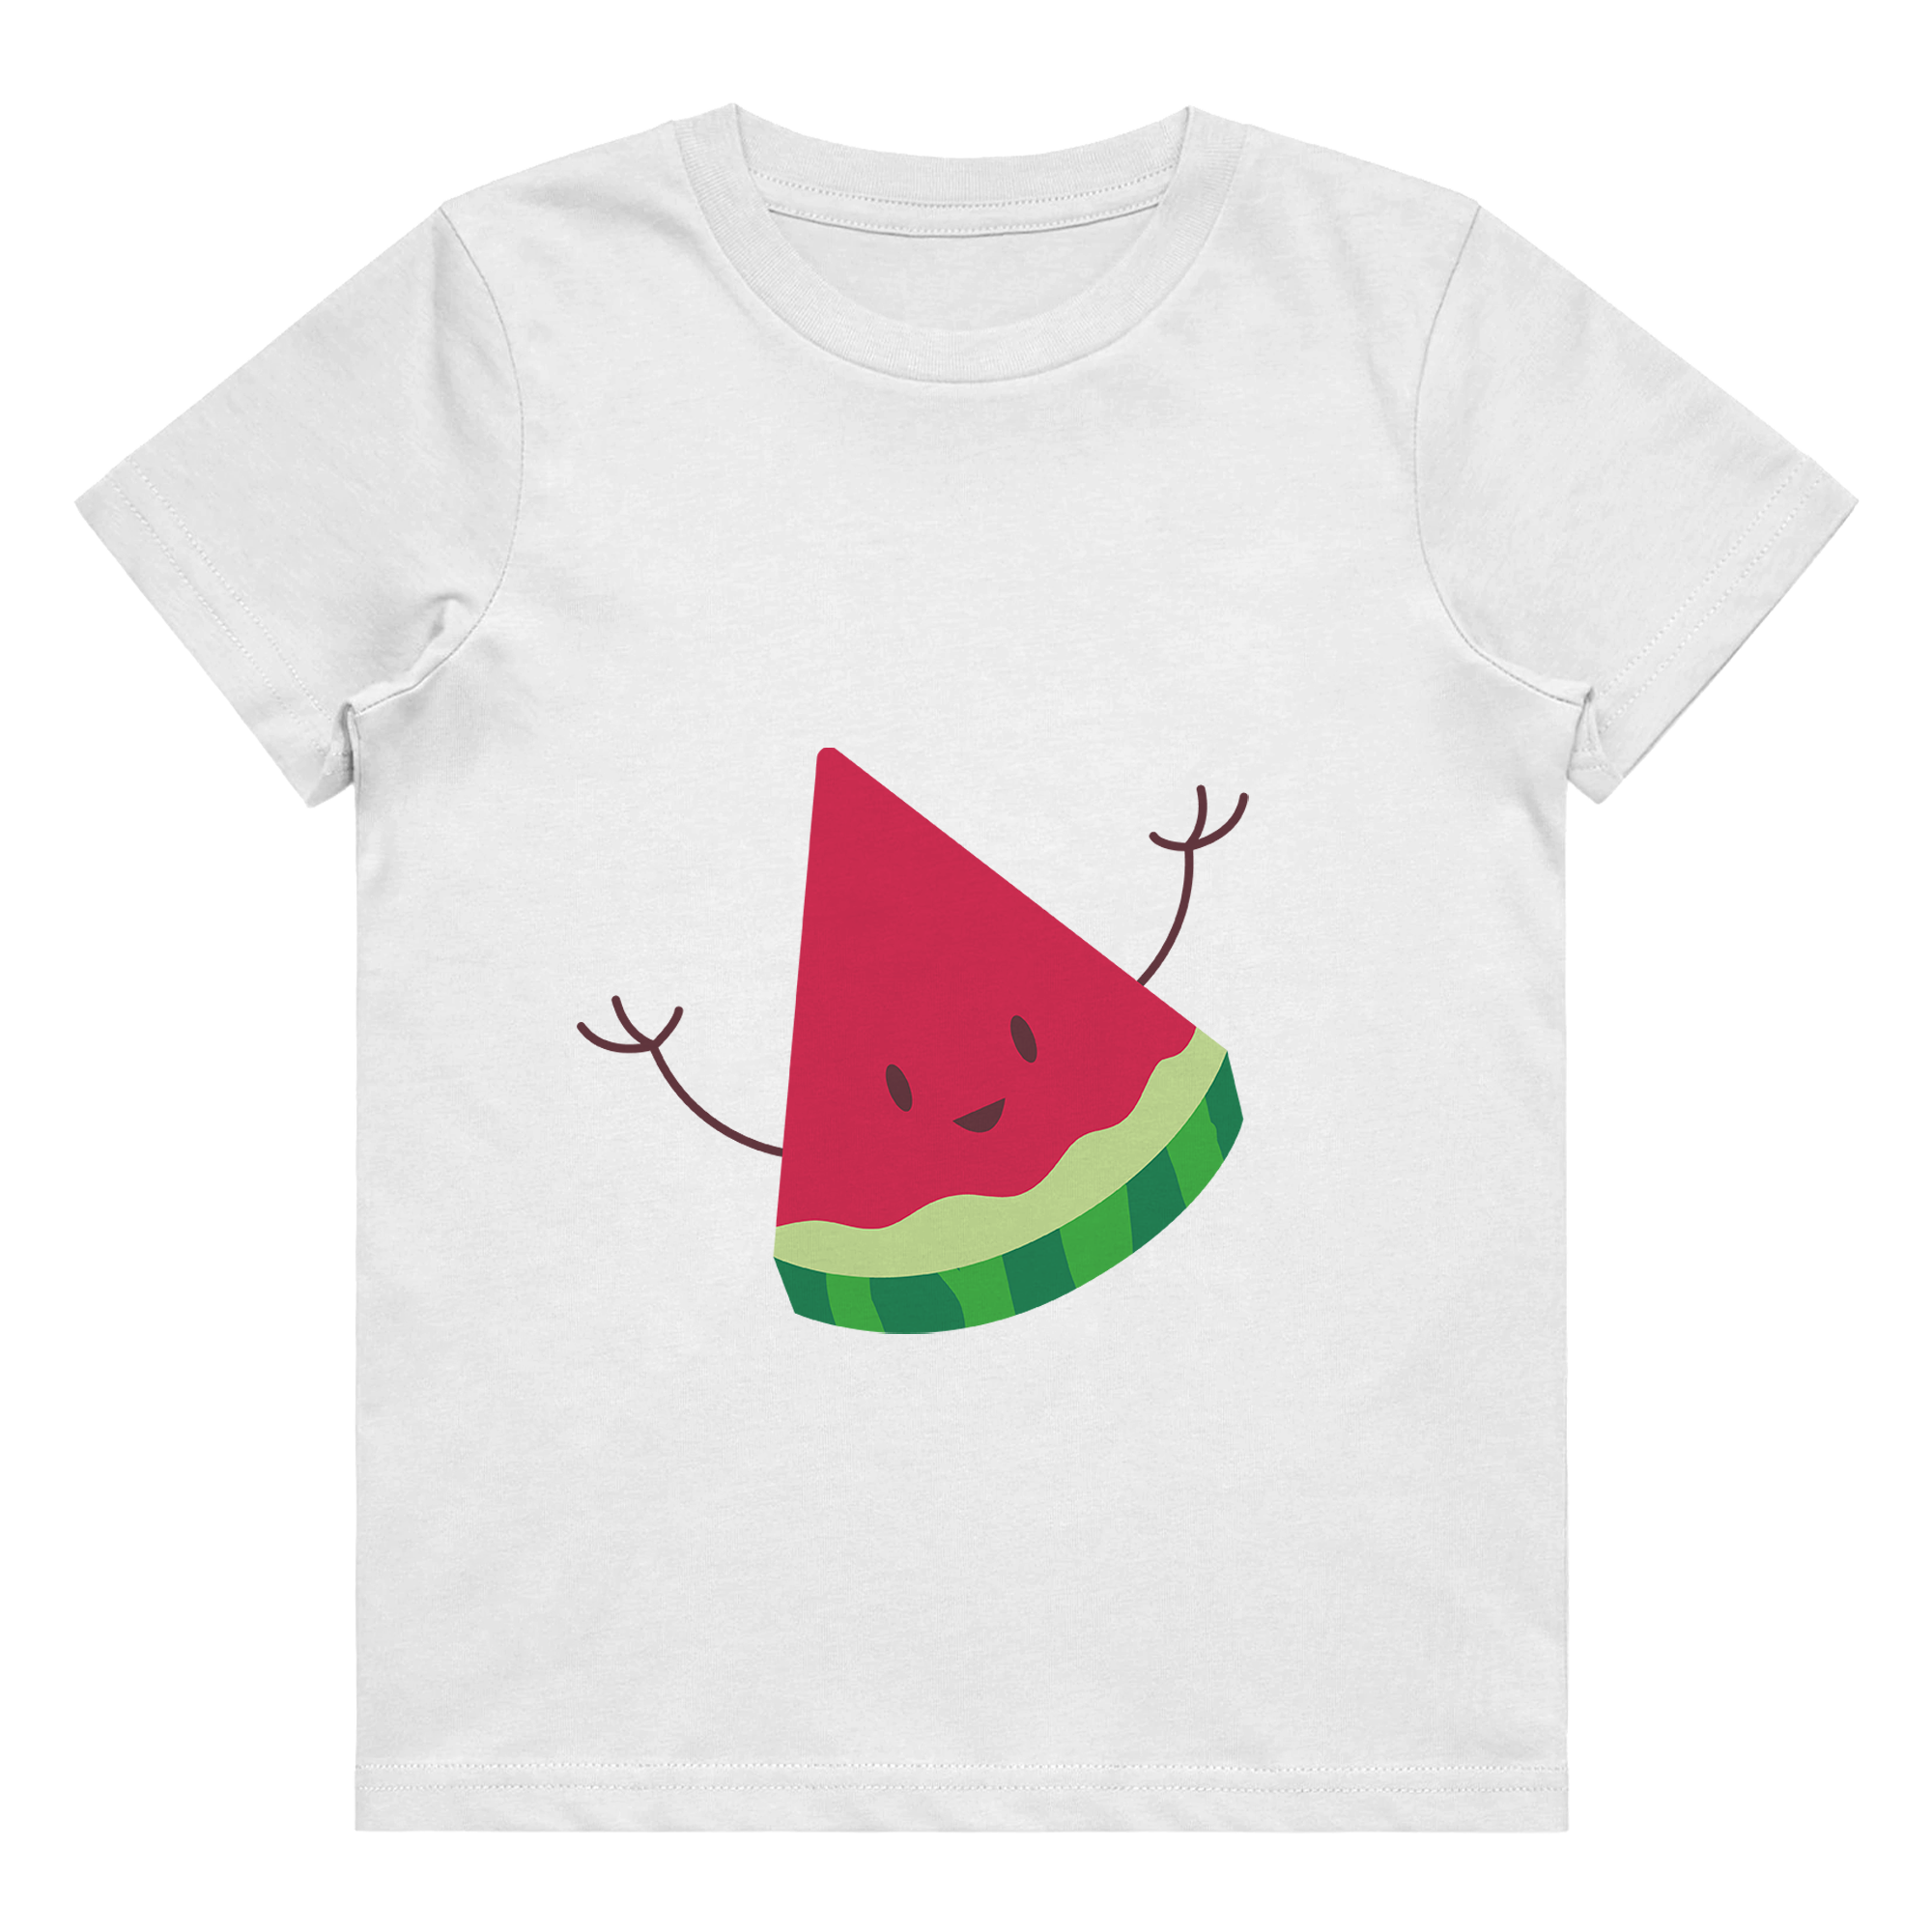 Kid's T-Shirt - Watermelon